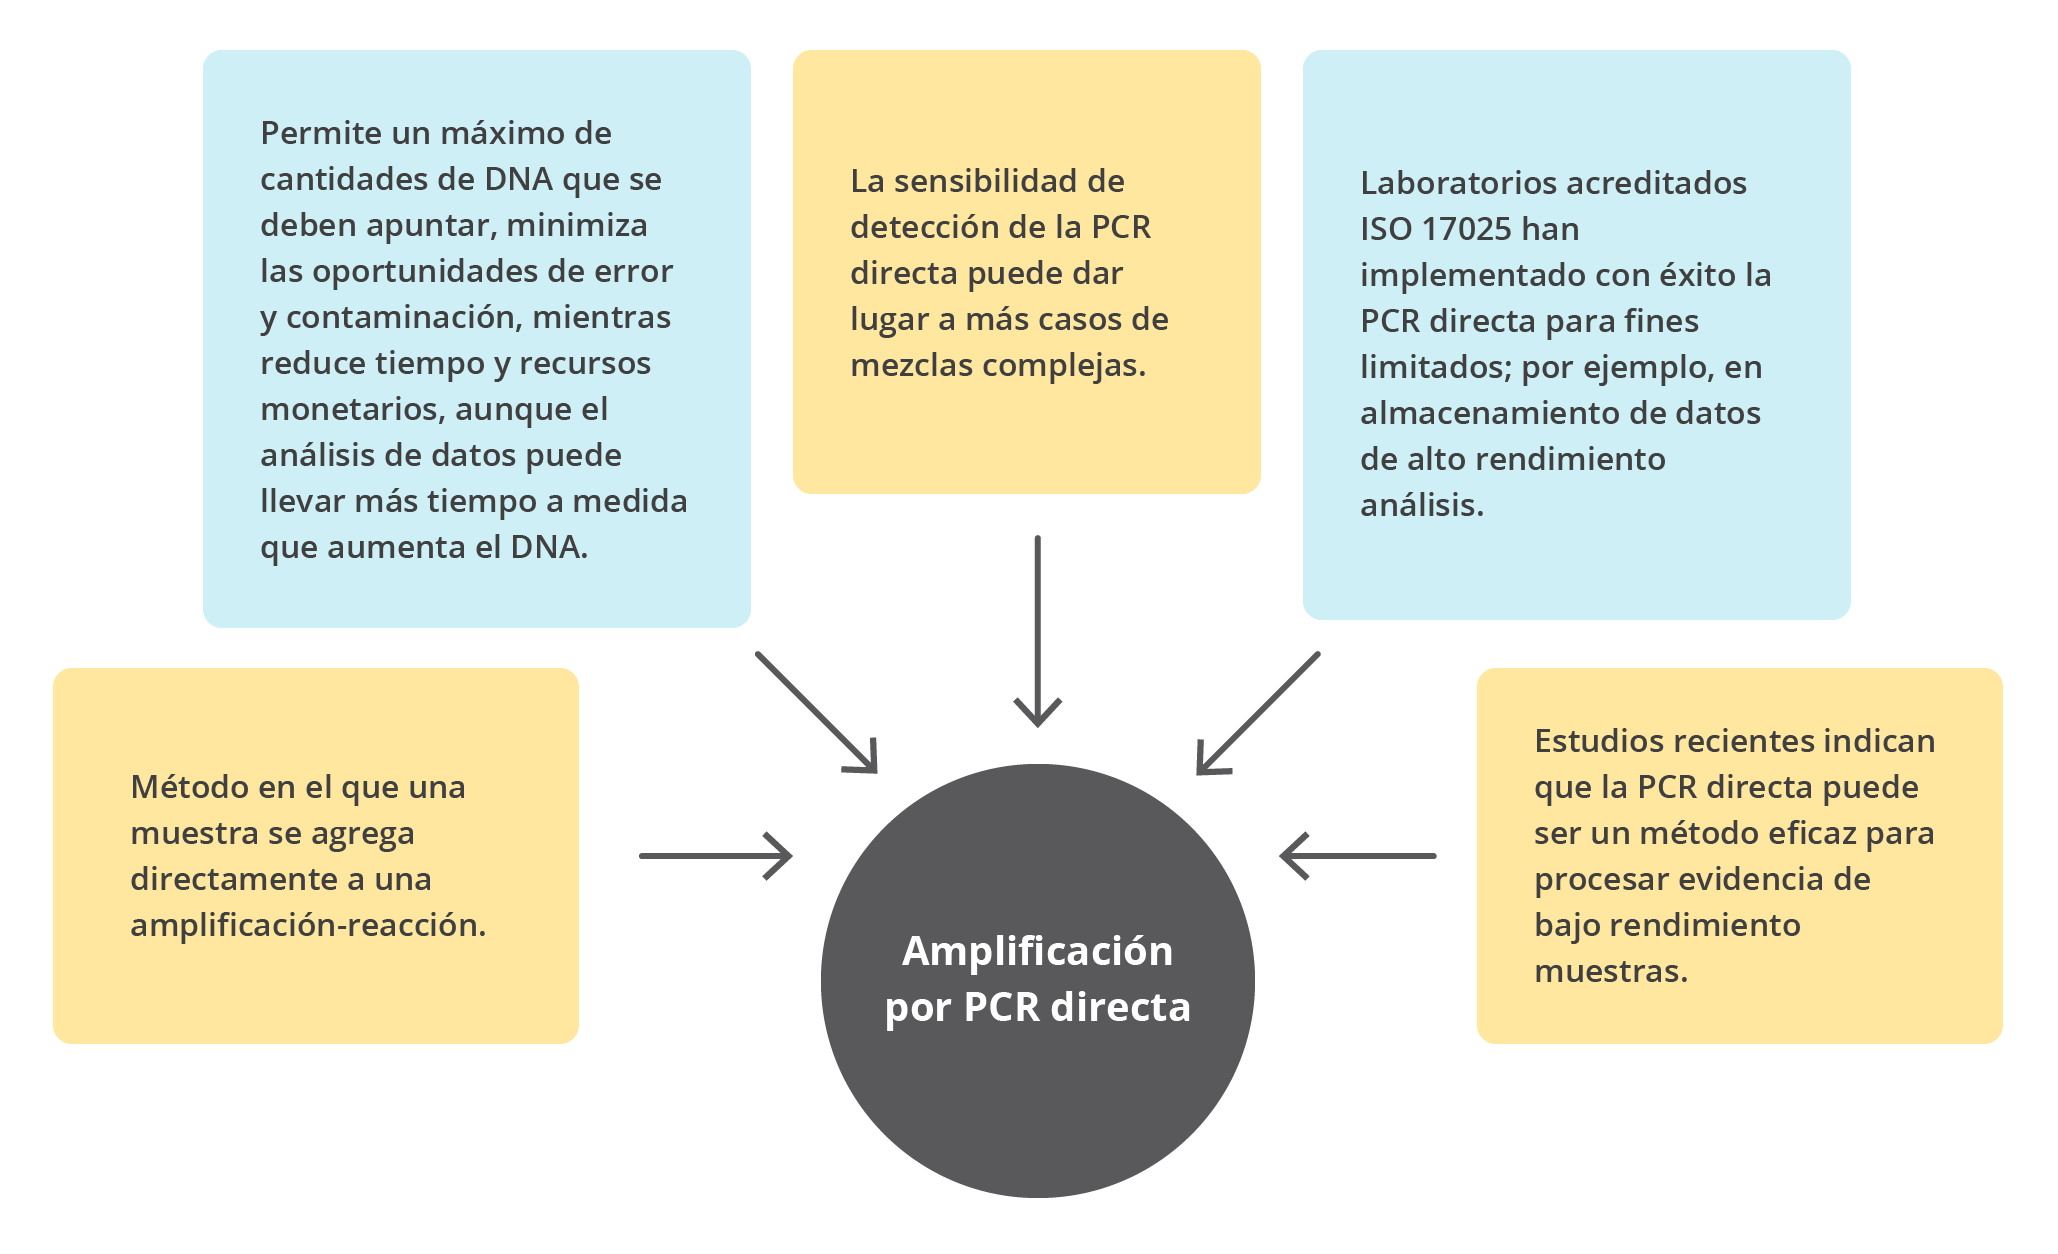 Concepto, parámetros para funcionamiento y aplicación de la PCR directa